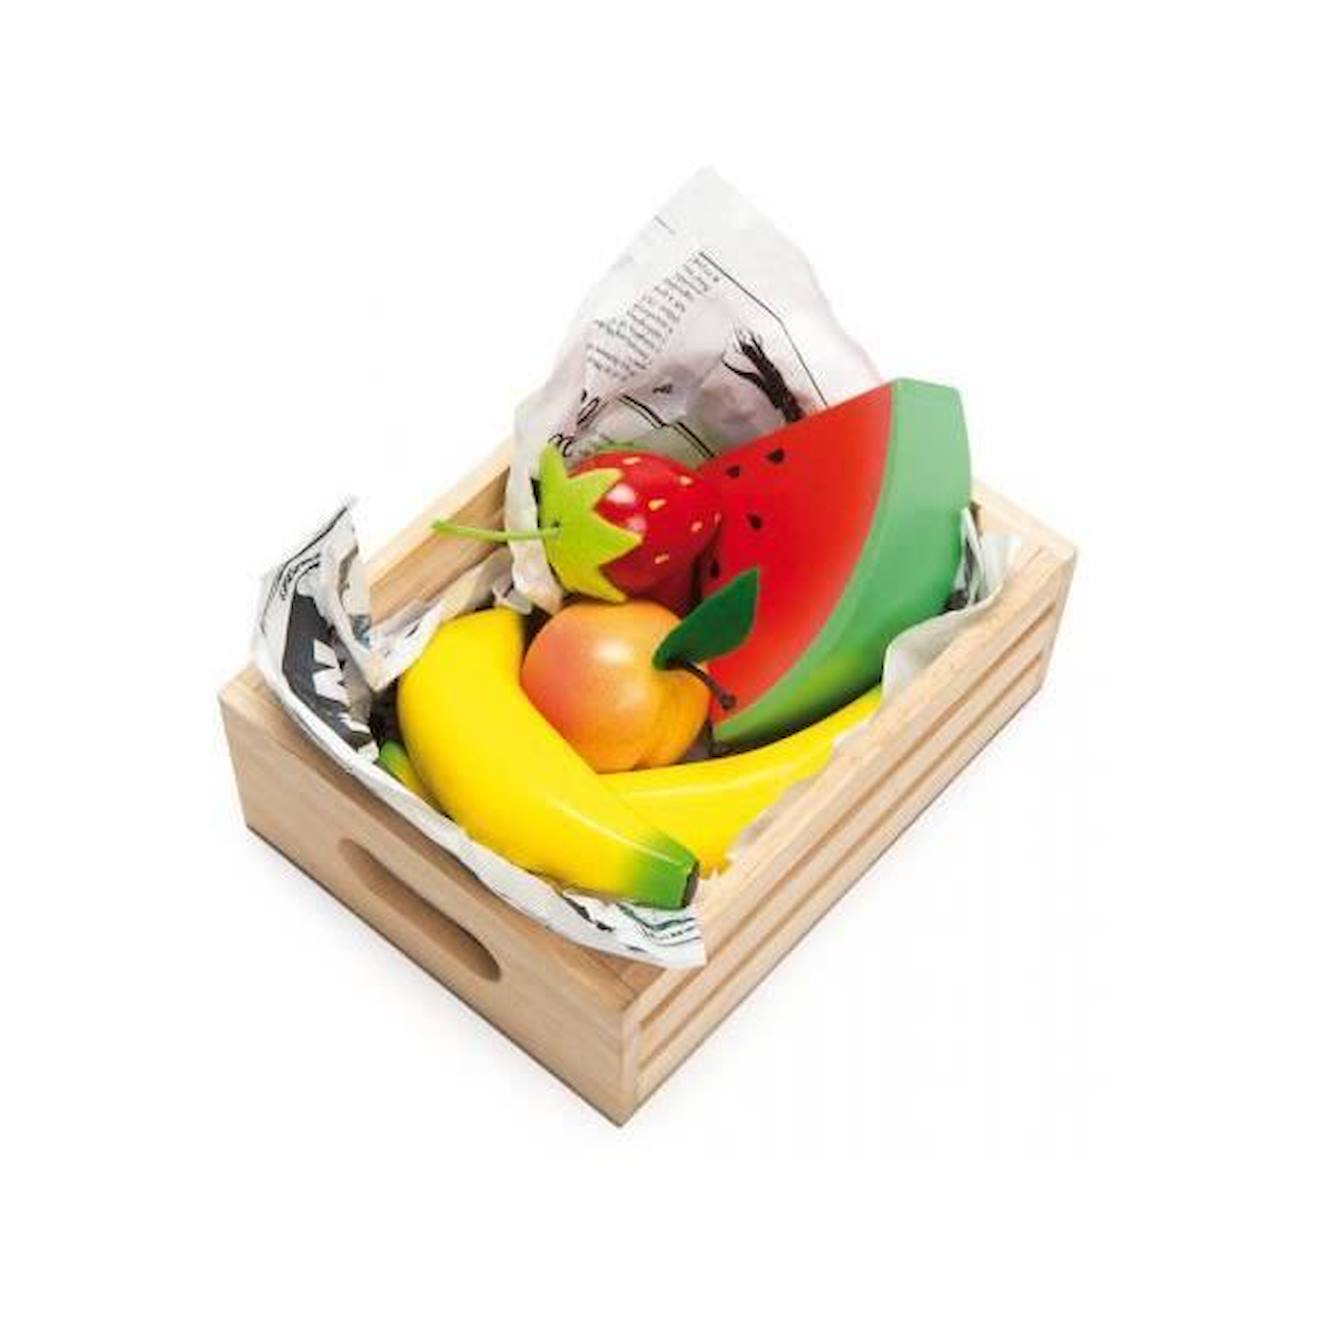 Panier De Fruits En Bois - Le Toy Van - Tv183 - Rouge, Vert, Jaune Et Orange Rouge